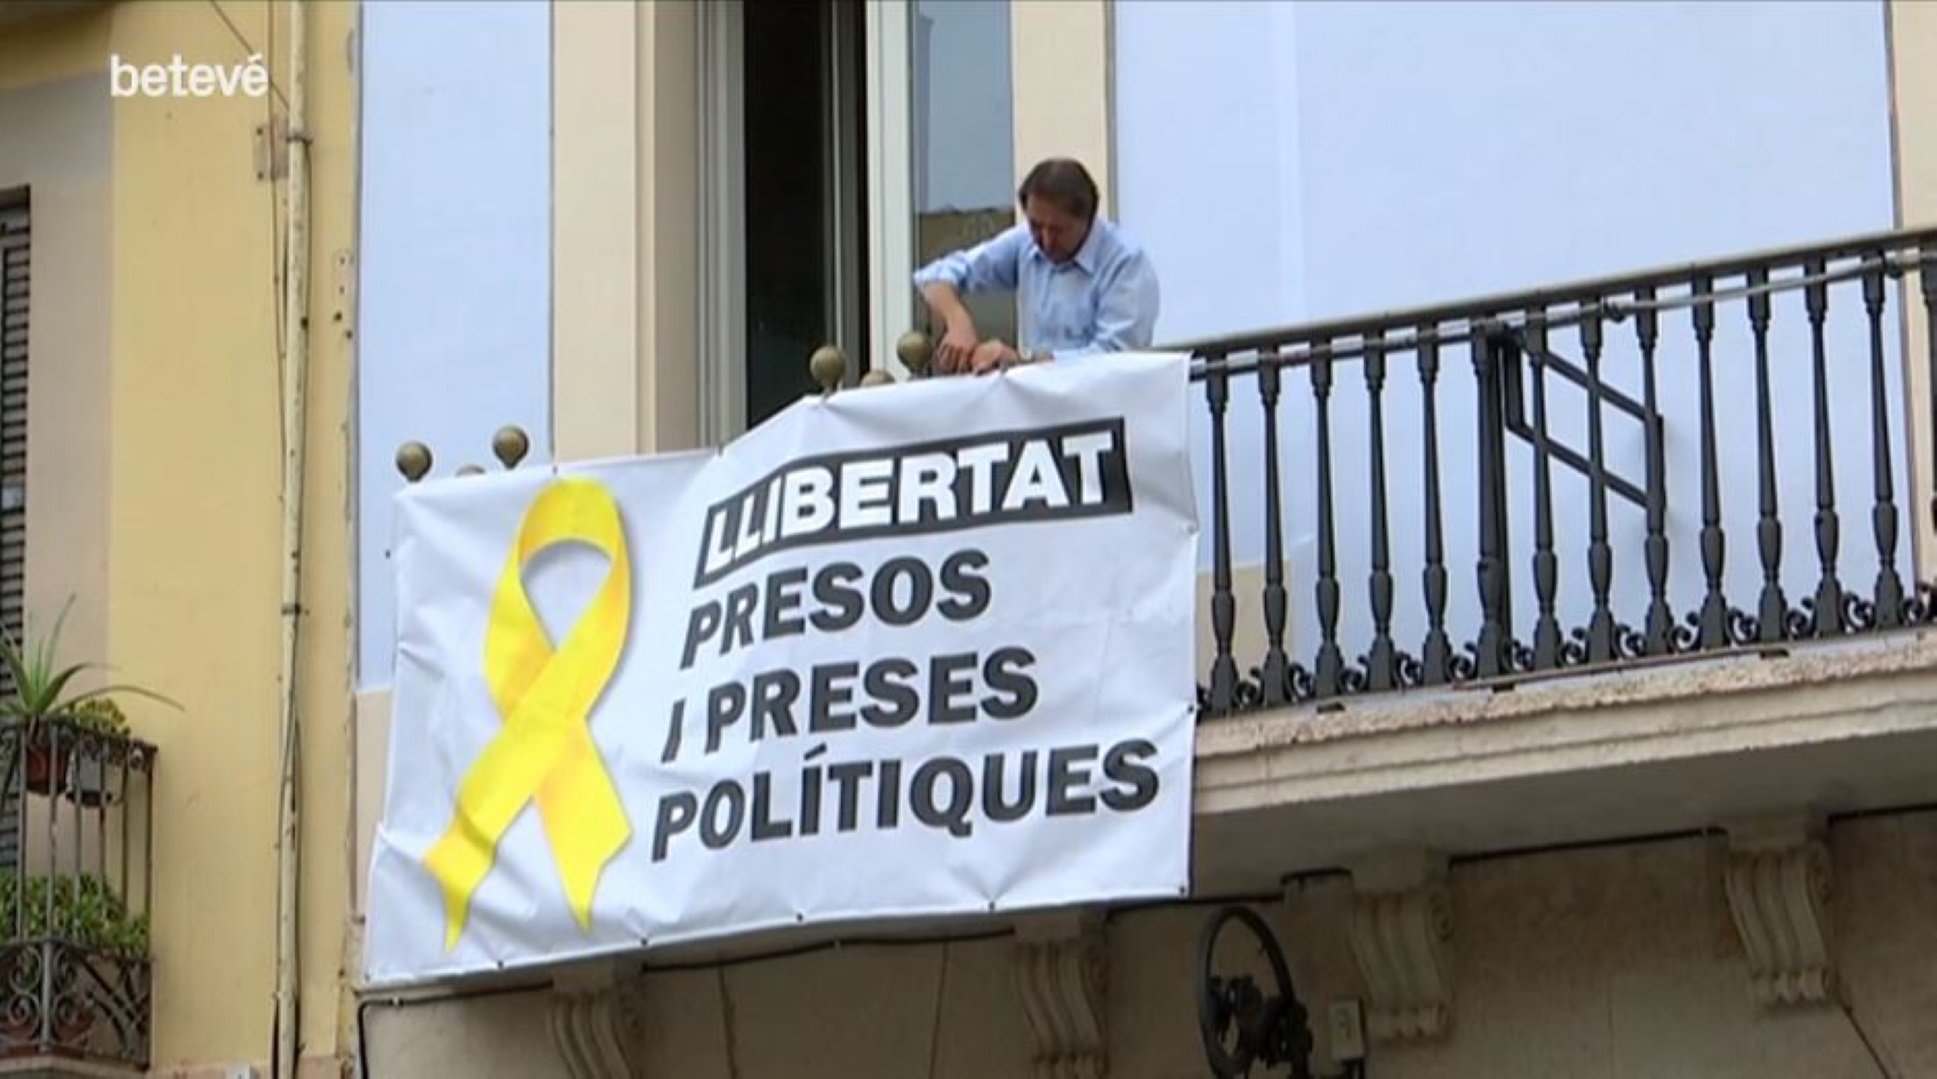 VÍDEO: L'Ajuntament de Barcelona retira els llaços grocs